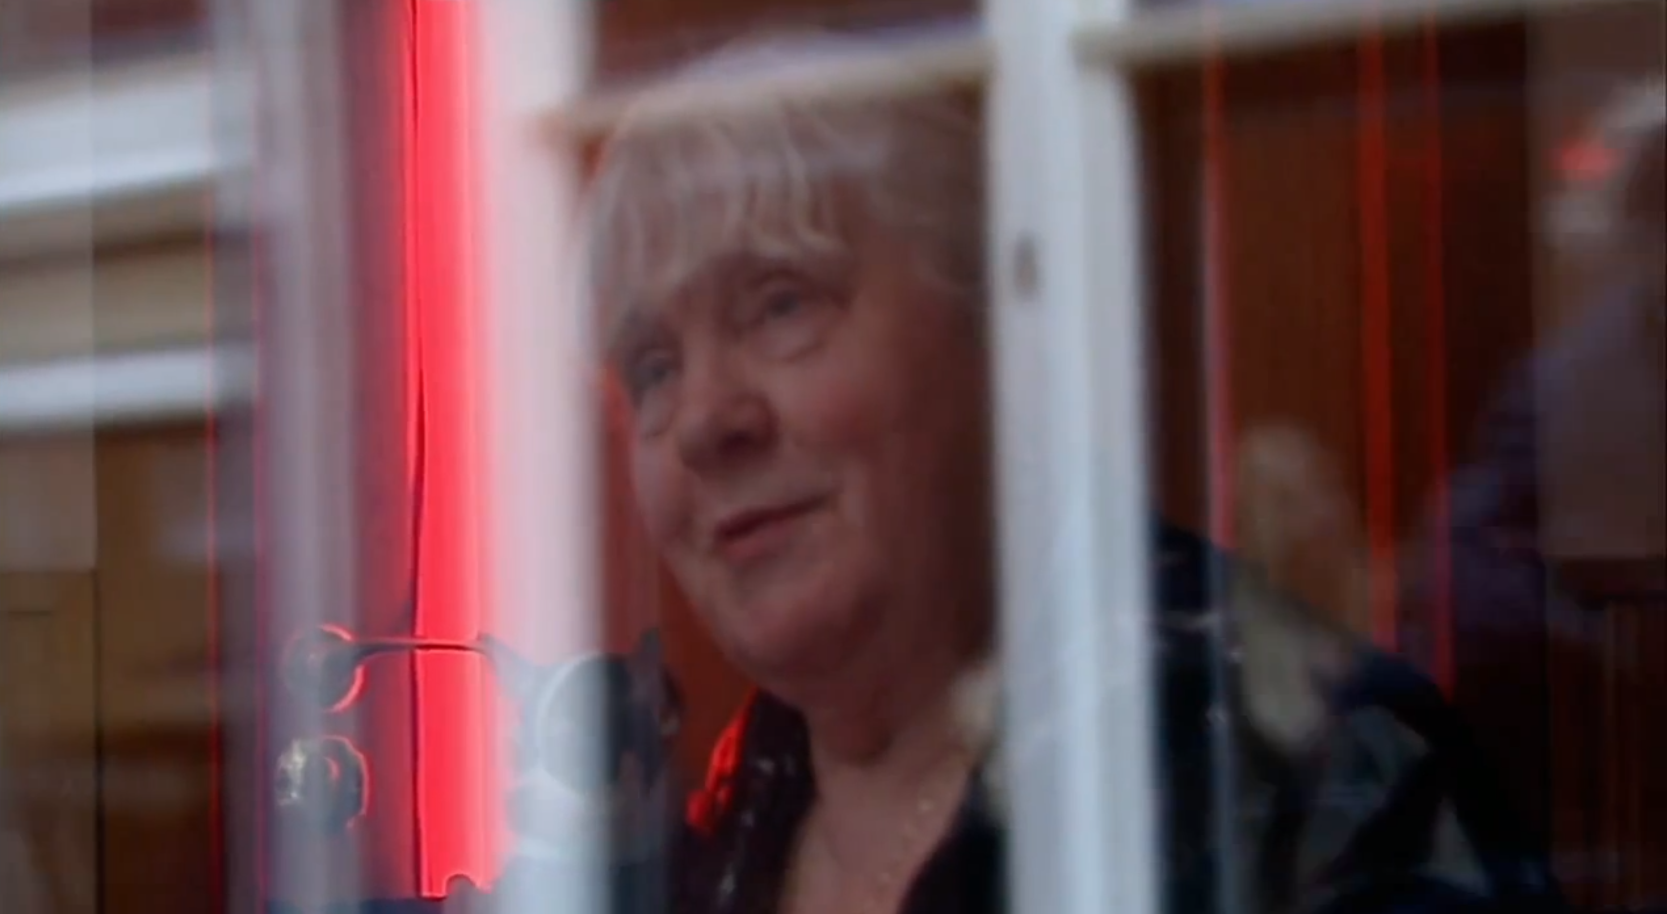 Martine Fokkens försöker fortfarande locka kunder genom ett fönster.